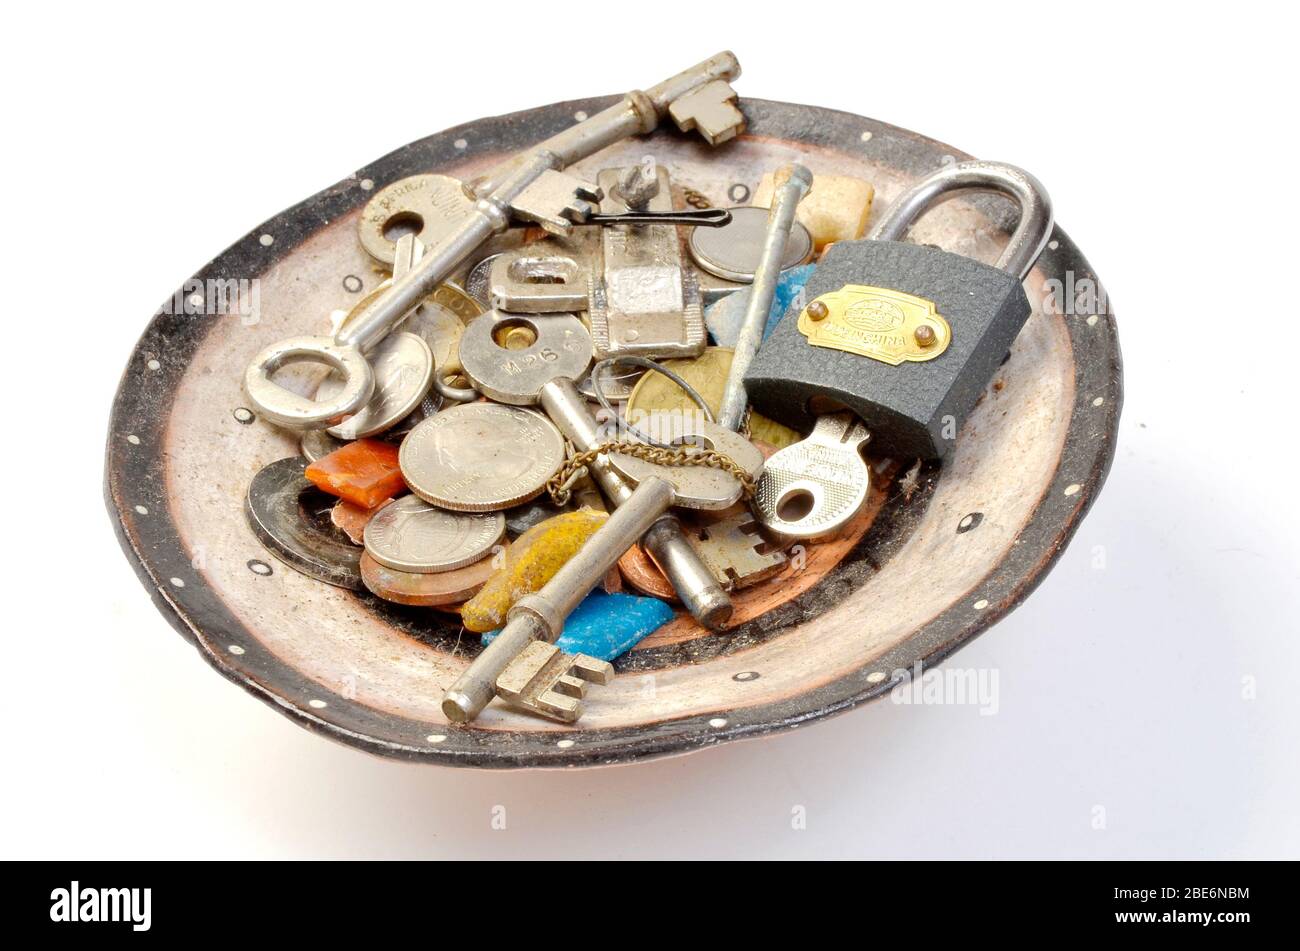 colección de llaves viejas del hogar y bric a brac Foto de stock